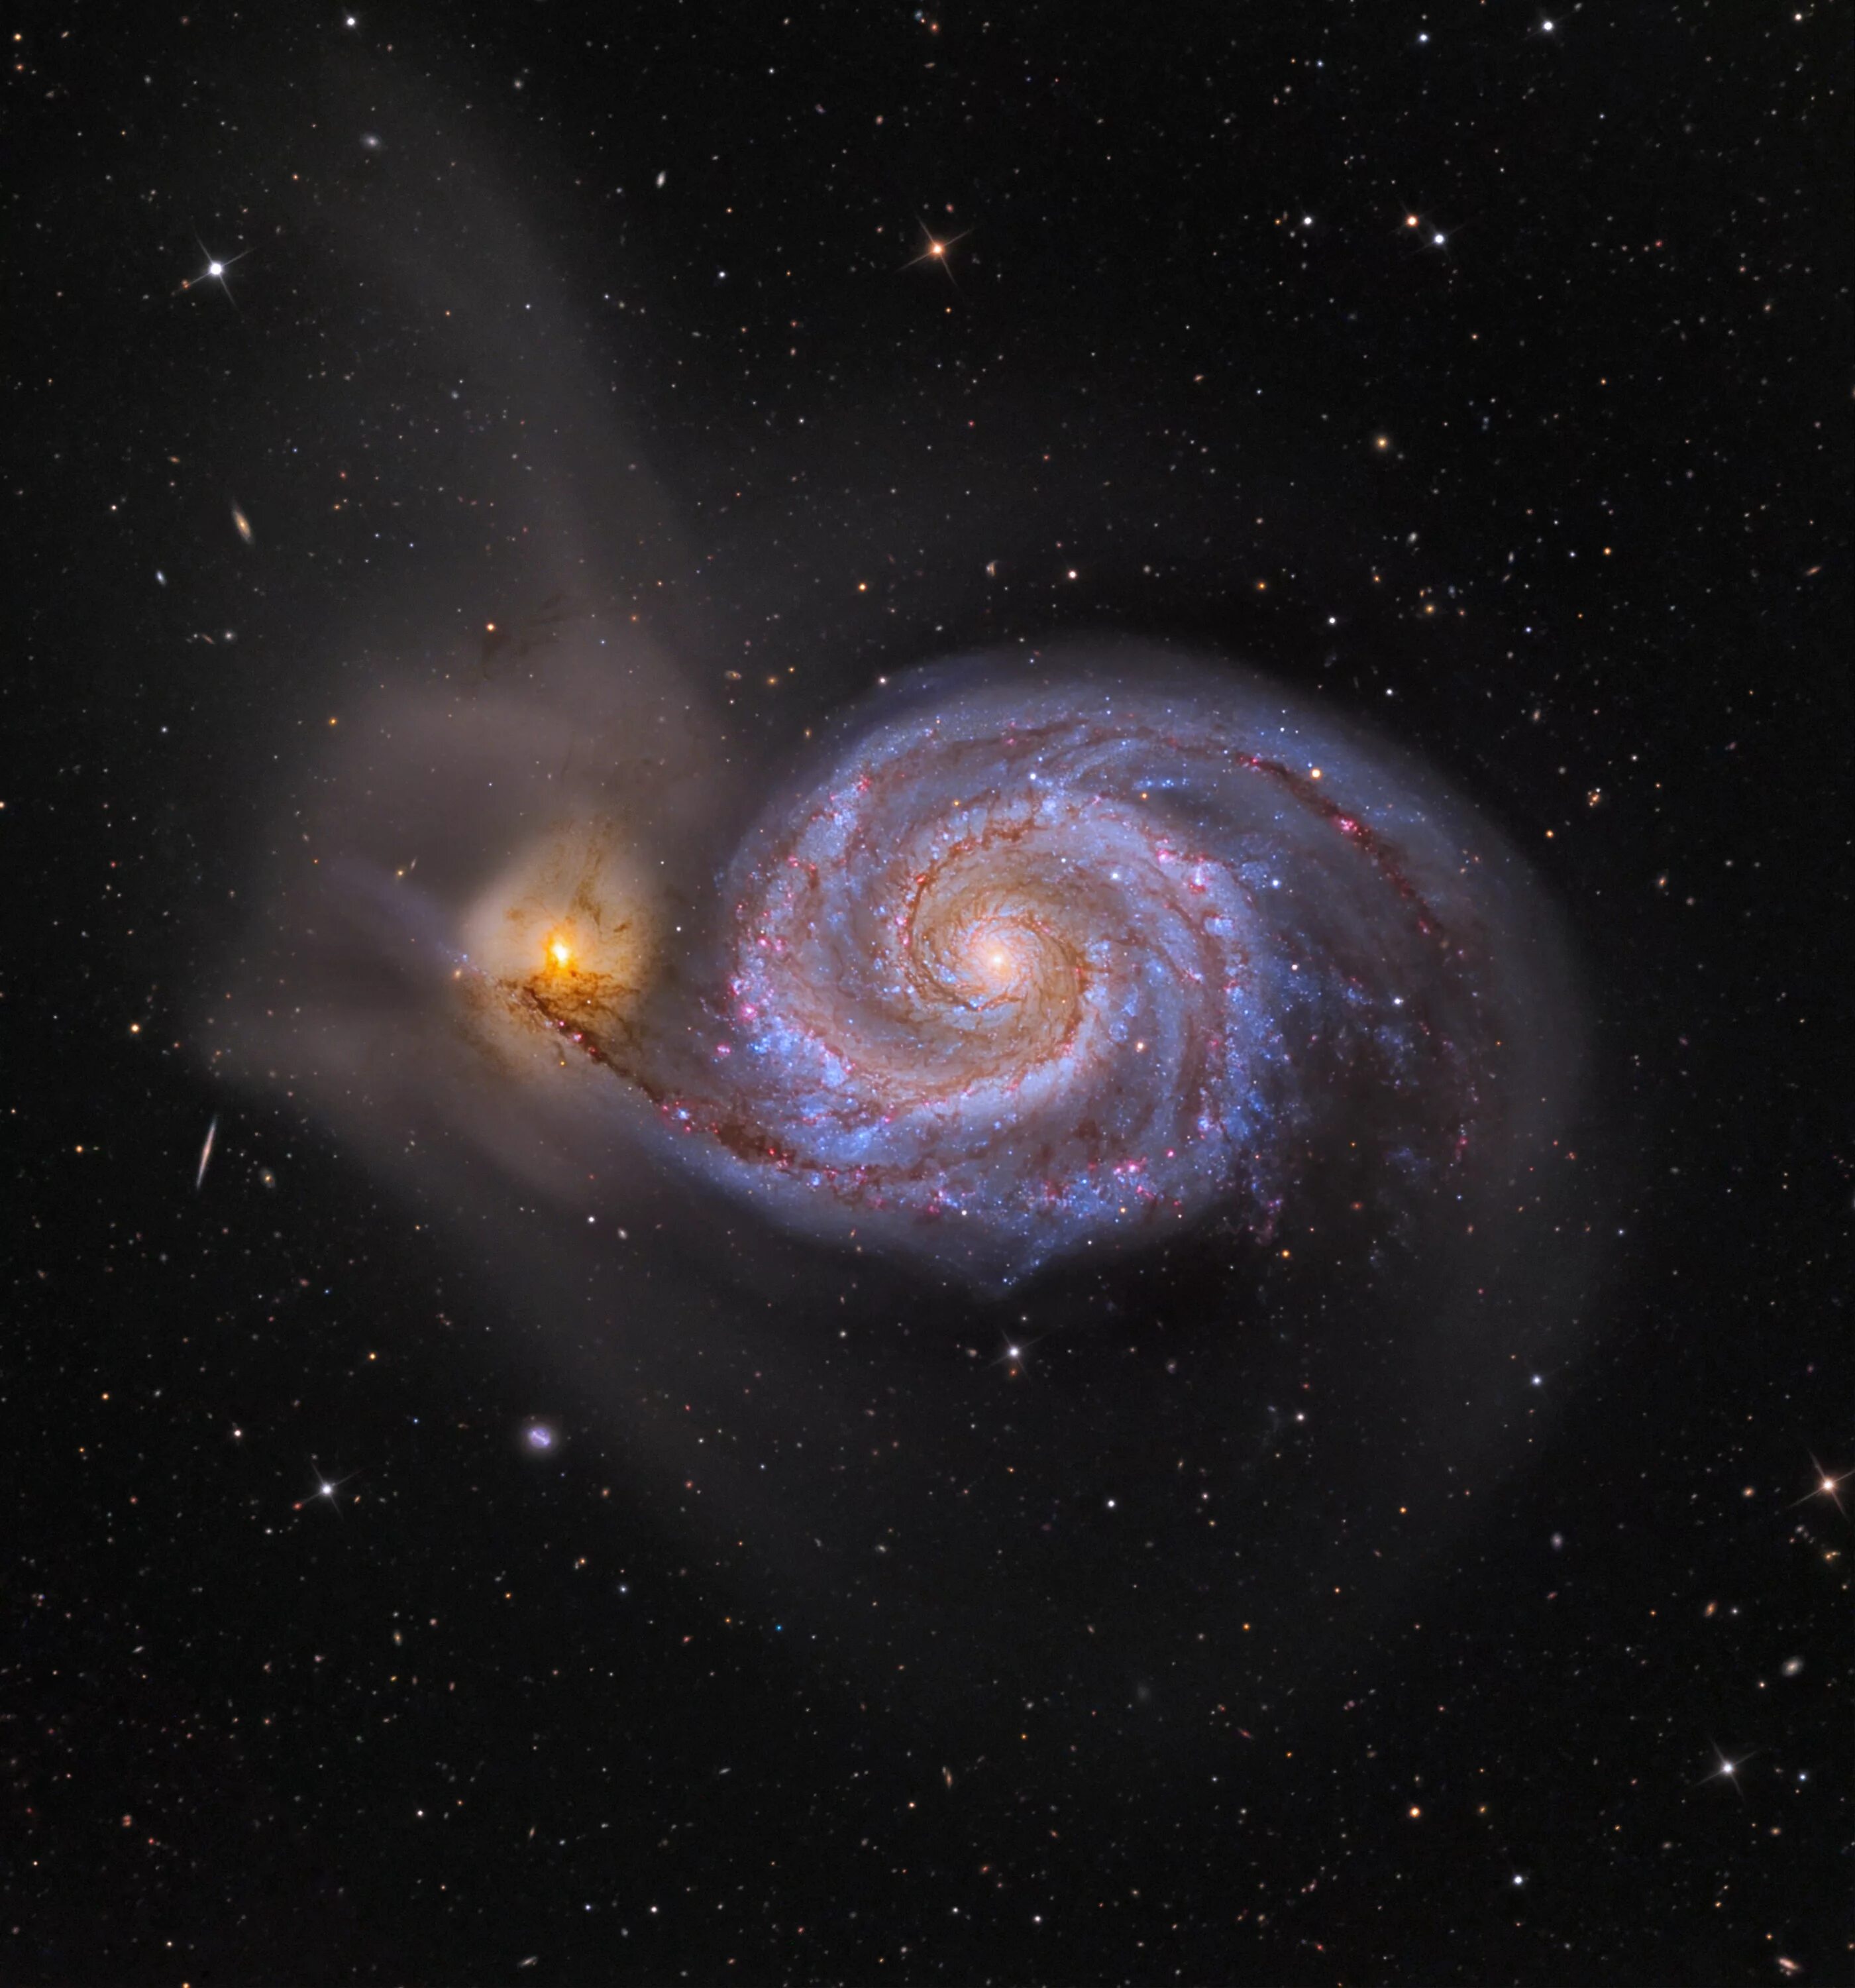 М51 водоворот. Галактика водоворот м51. Спиральная Галактика m51. M51 Whirlpool Galaxy. Гигантская звездная система